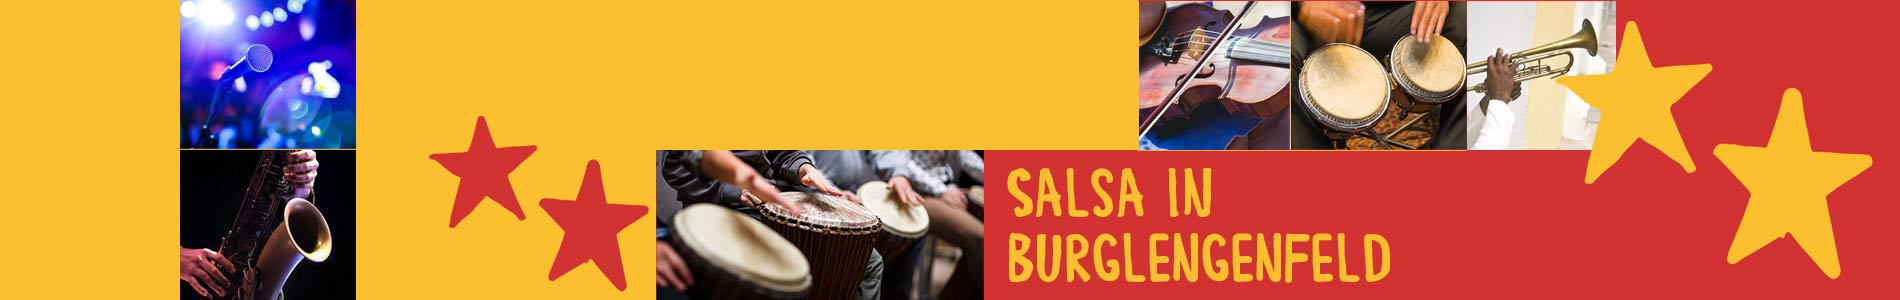 Salsa in Burglengenfeld – Salsa lernen und tanzen, Tanzkurse, Partys, Veranstaltungen